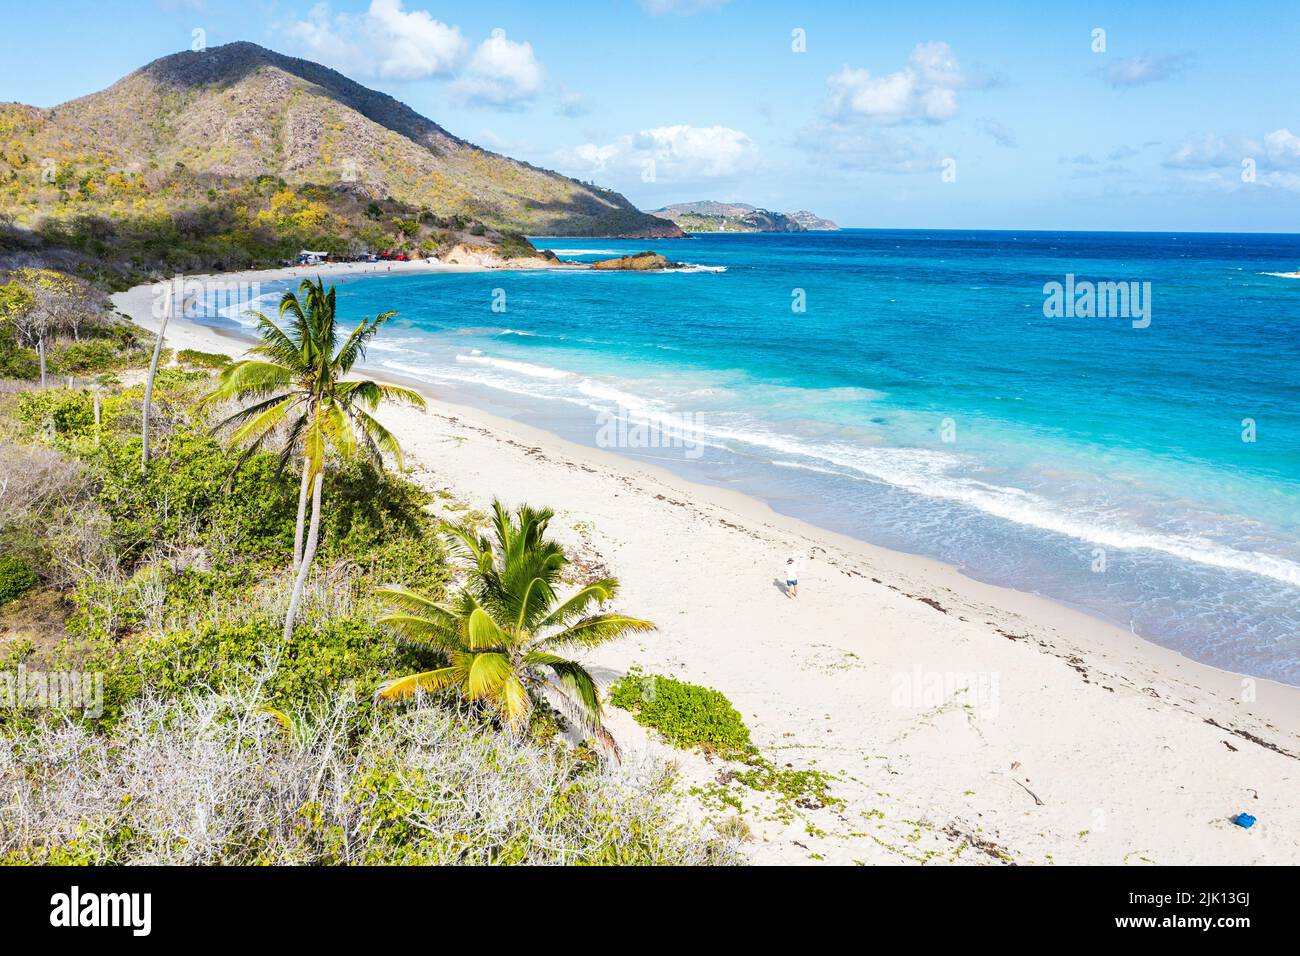 Un turista caminando por una playa rodeada de palmeras vacías, vista aérea, Playa Rendezvous, Antigua, Indias Occidentales, Caribe, América Central Foto de stock